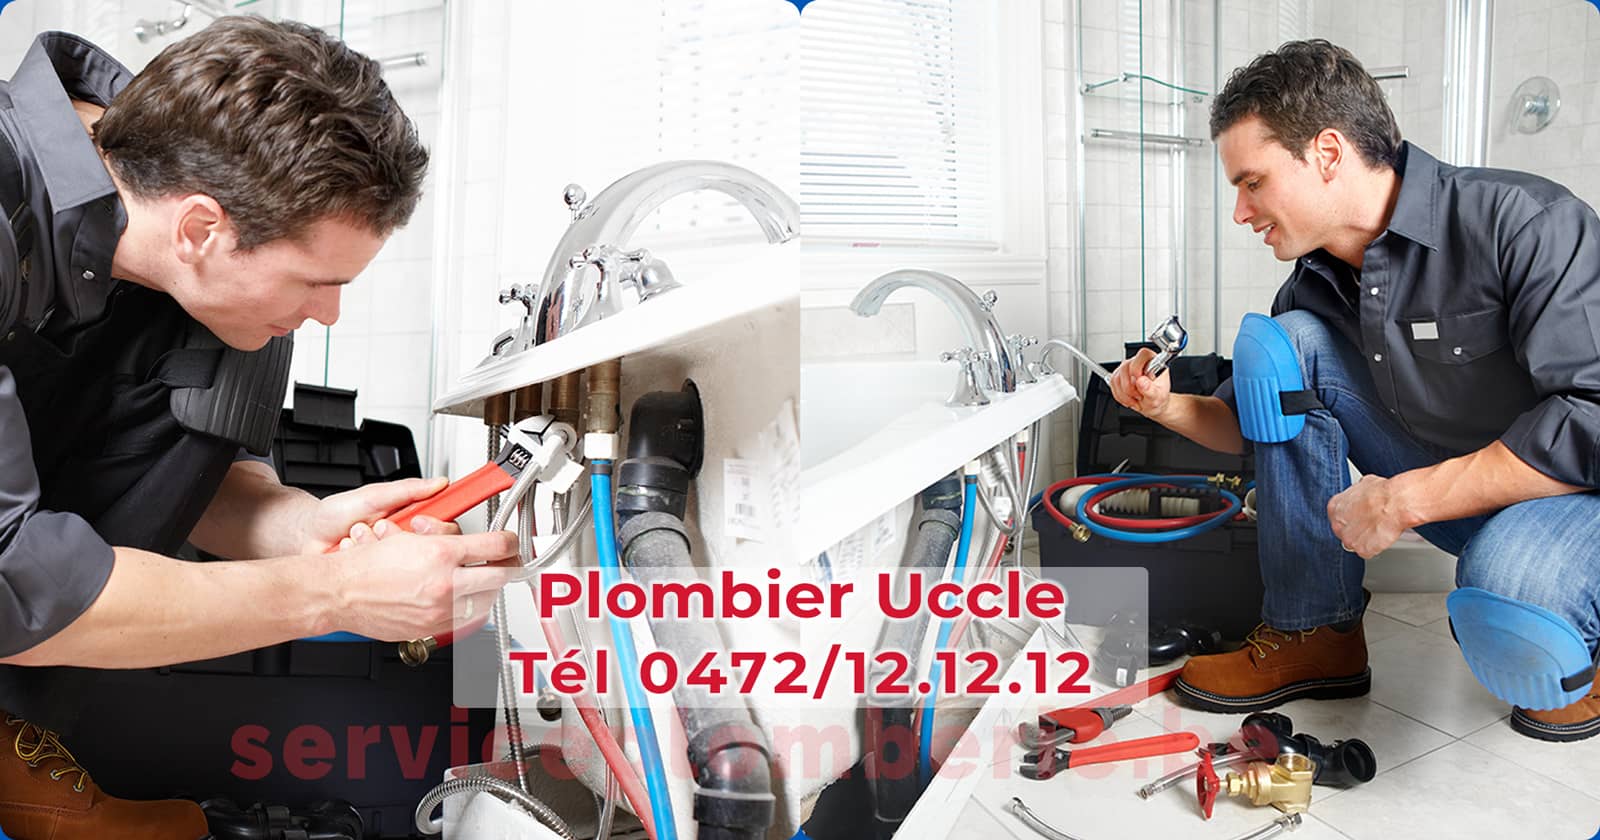 Plombier Uccle Agréé Professionnel Service Plomberie Tél 0472/12.12.12